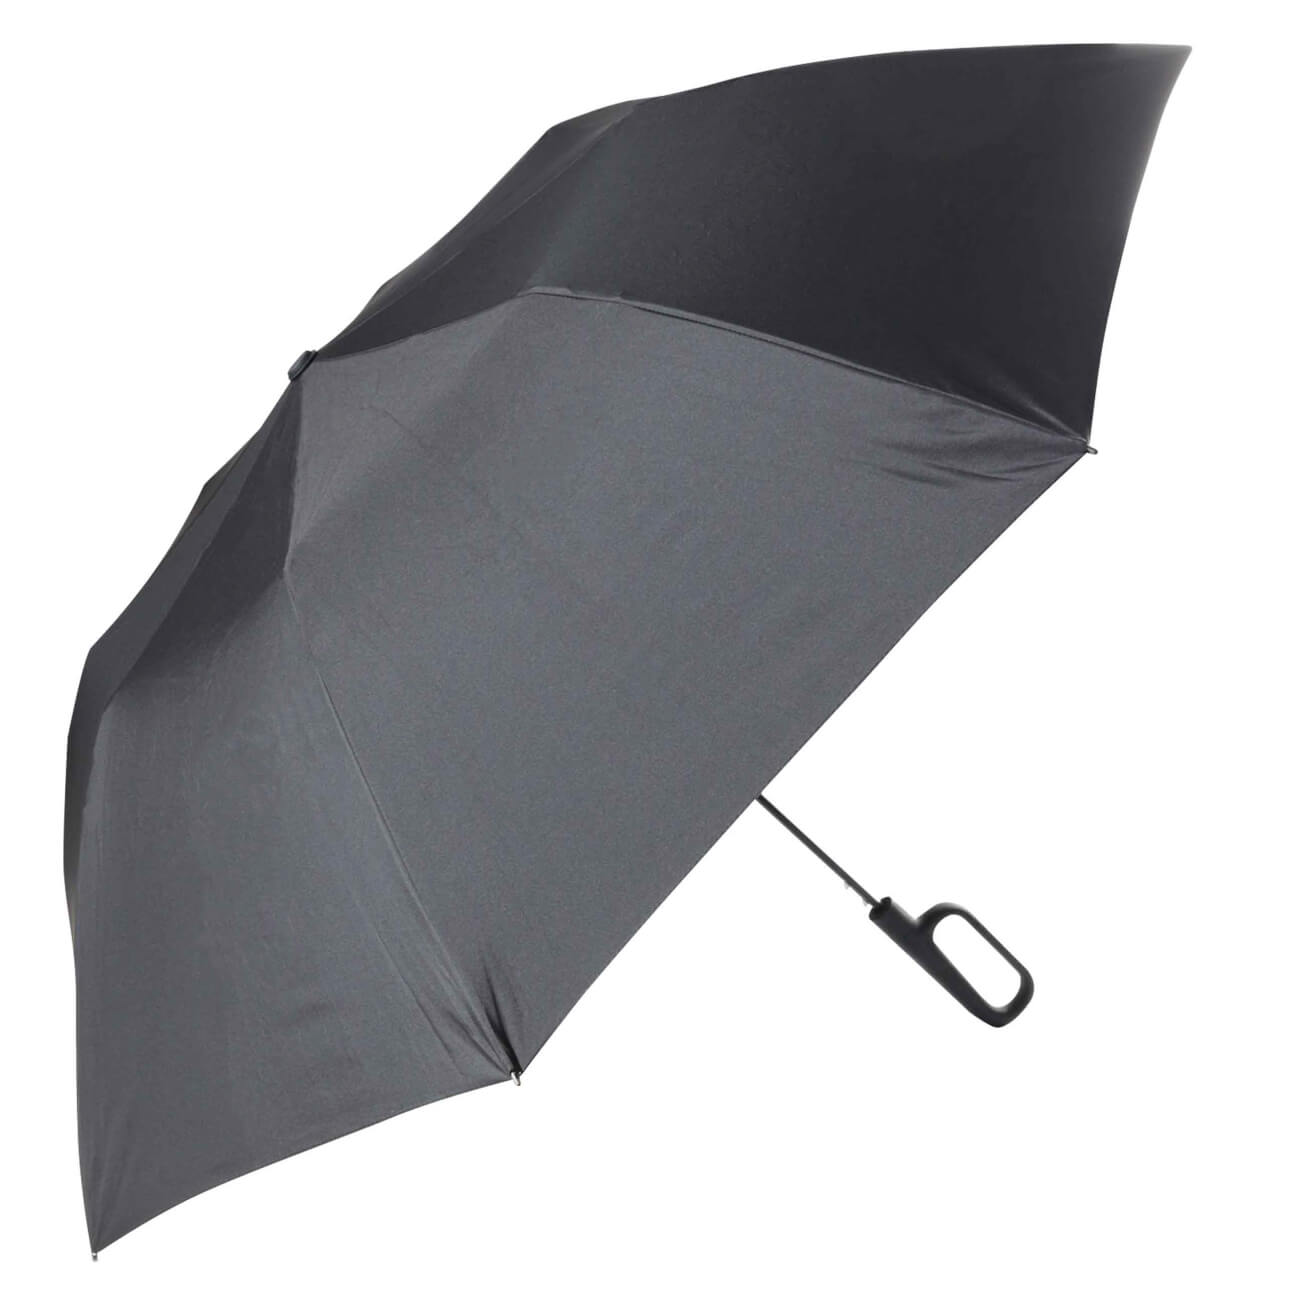 Зонт, 70 см, складной, полу-автоматический, с ручкой-карабином, эпонж, черный, Rainfall ветрозащитный светодиодный зонт от солнца и дождя легкий компактный складной обратный автоматический сильный зонт